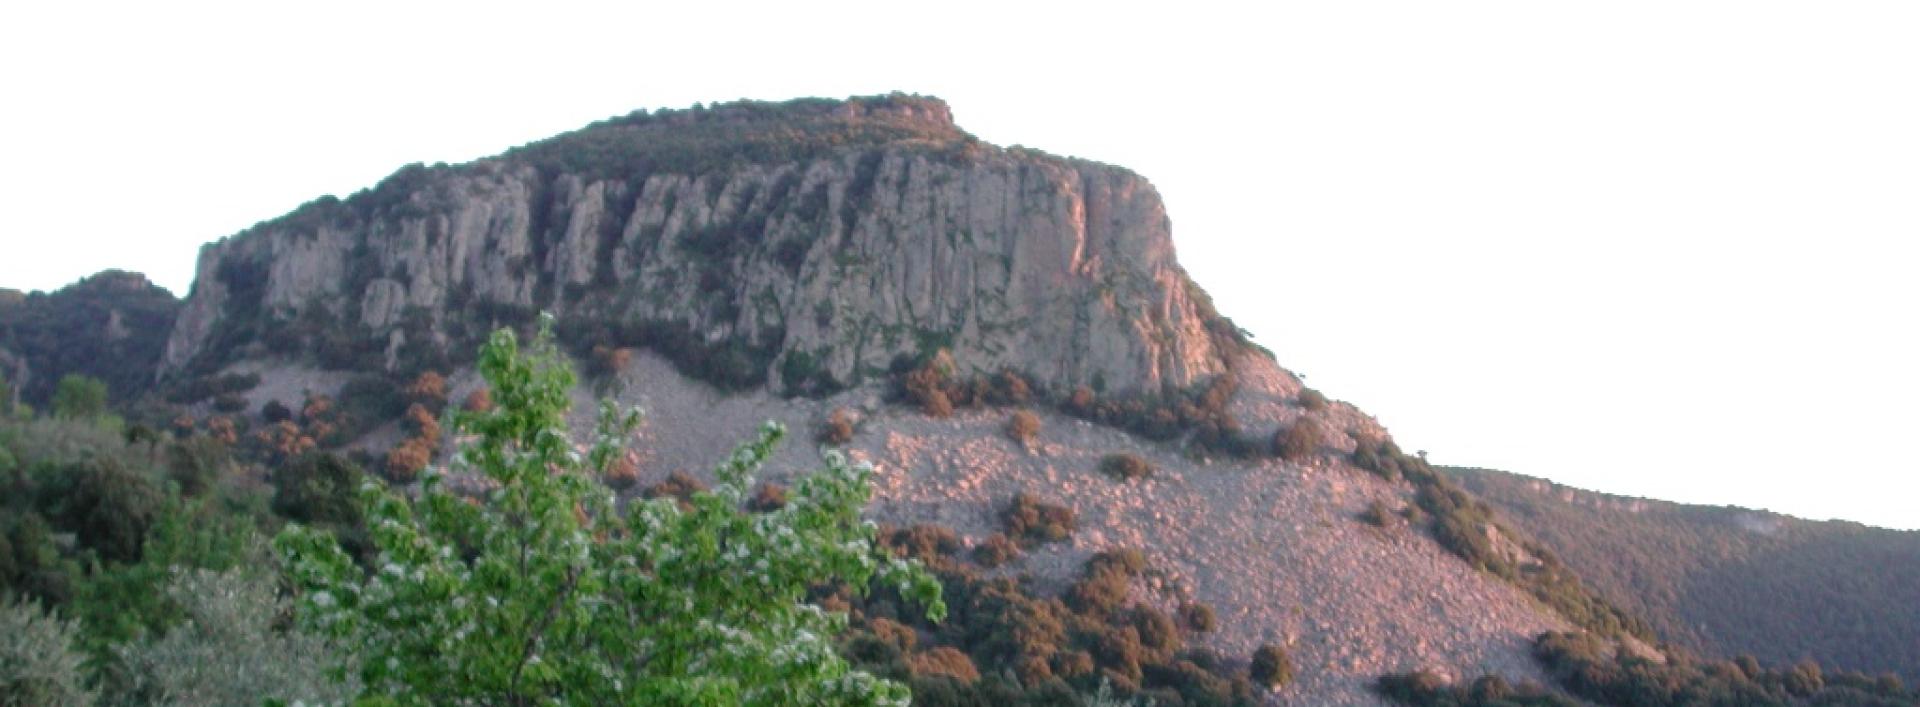 Perdasdefogu, Parco comunale di Bruncu Santoru